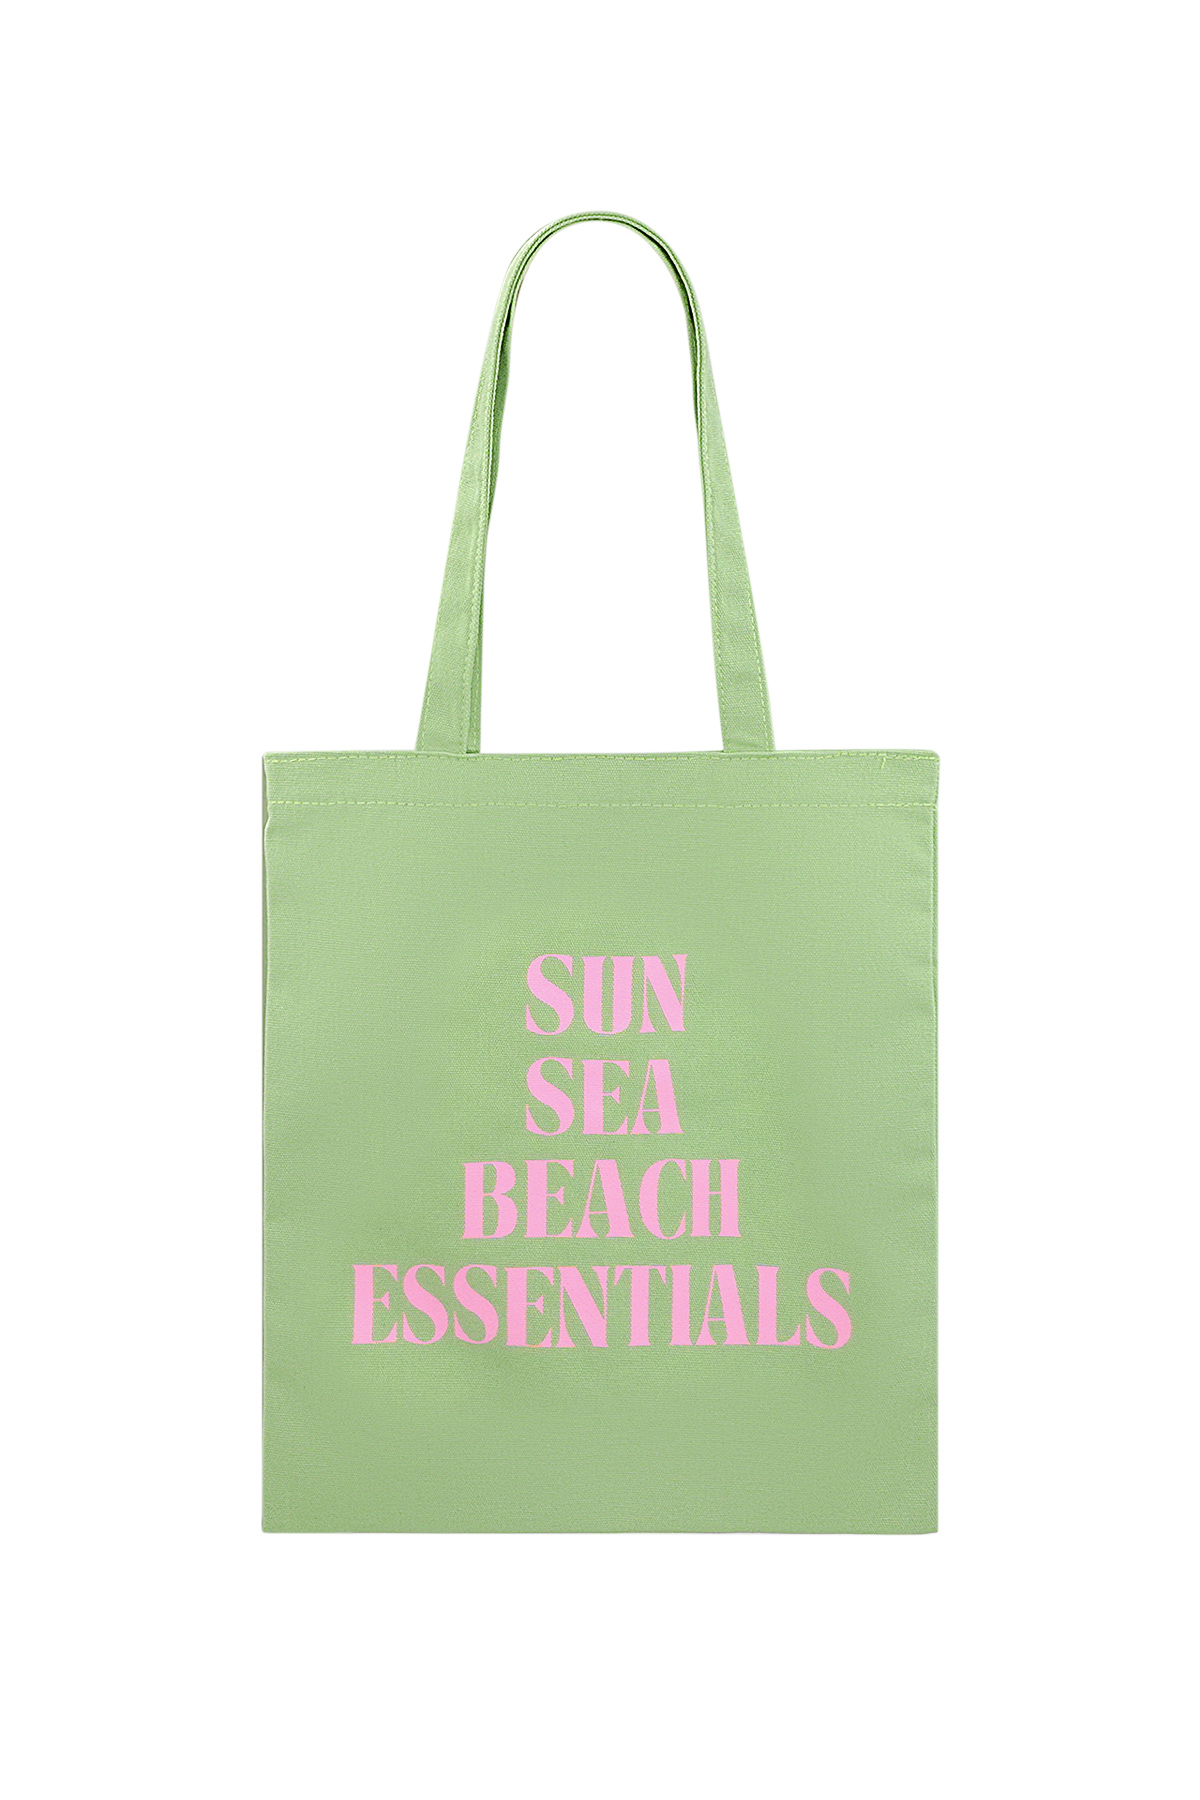 Kanvas müşteri güneş deniz plajı - yeşil pembe 